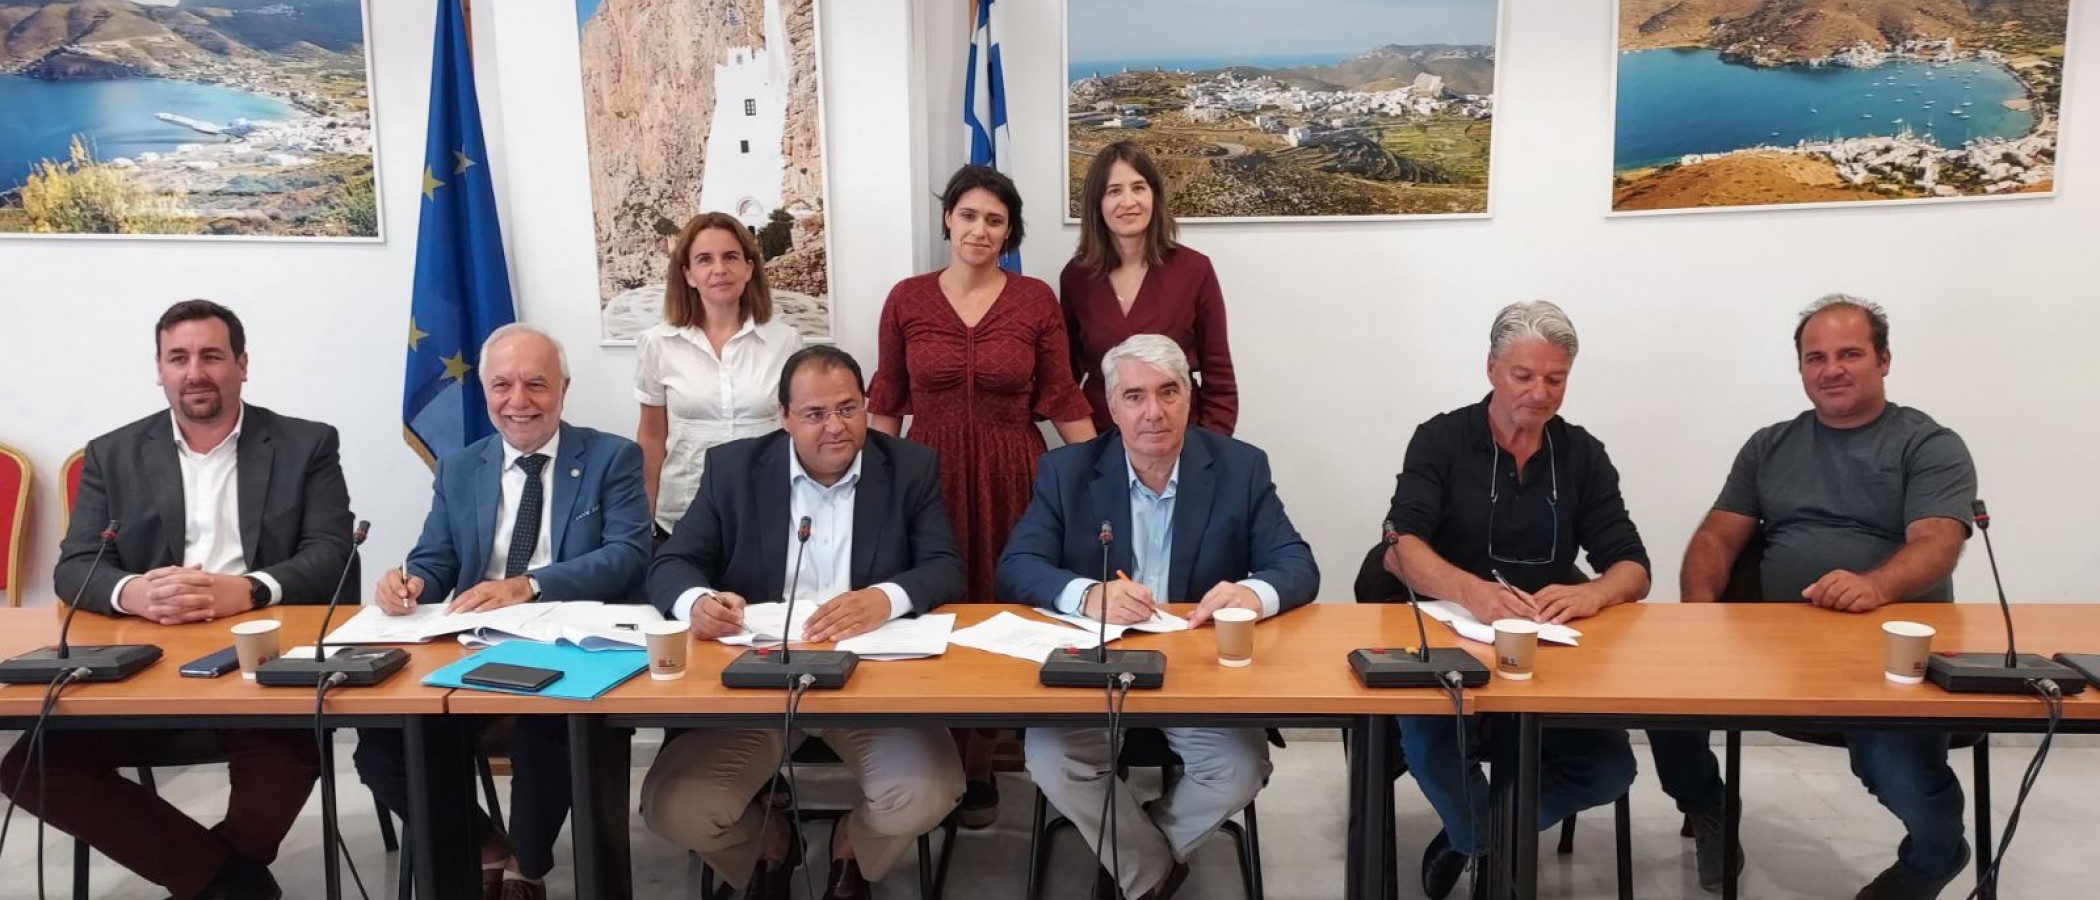 Το Γεωπονικό Πανεπιστήμιο Αθηνών συνυπογράφει Μνημόνιο Συνεργασίας για την προστασία της θάλασσας και της αλιείας.